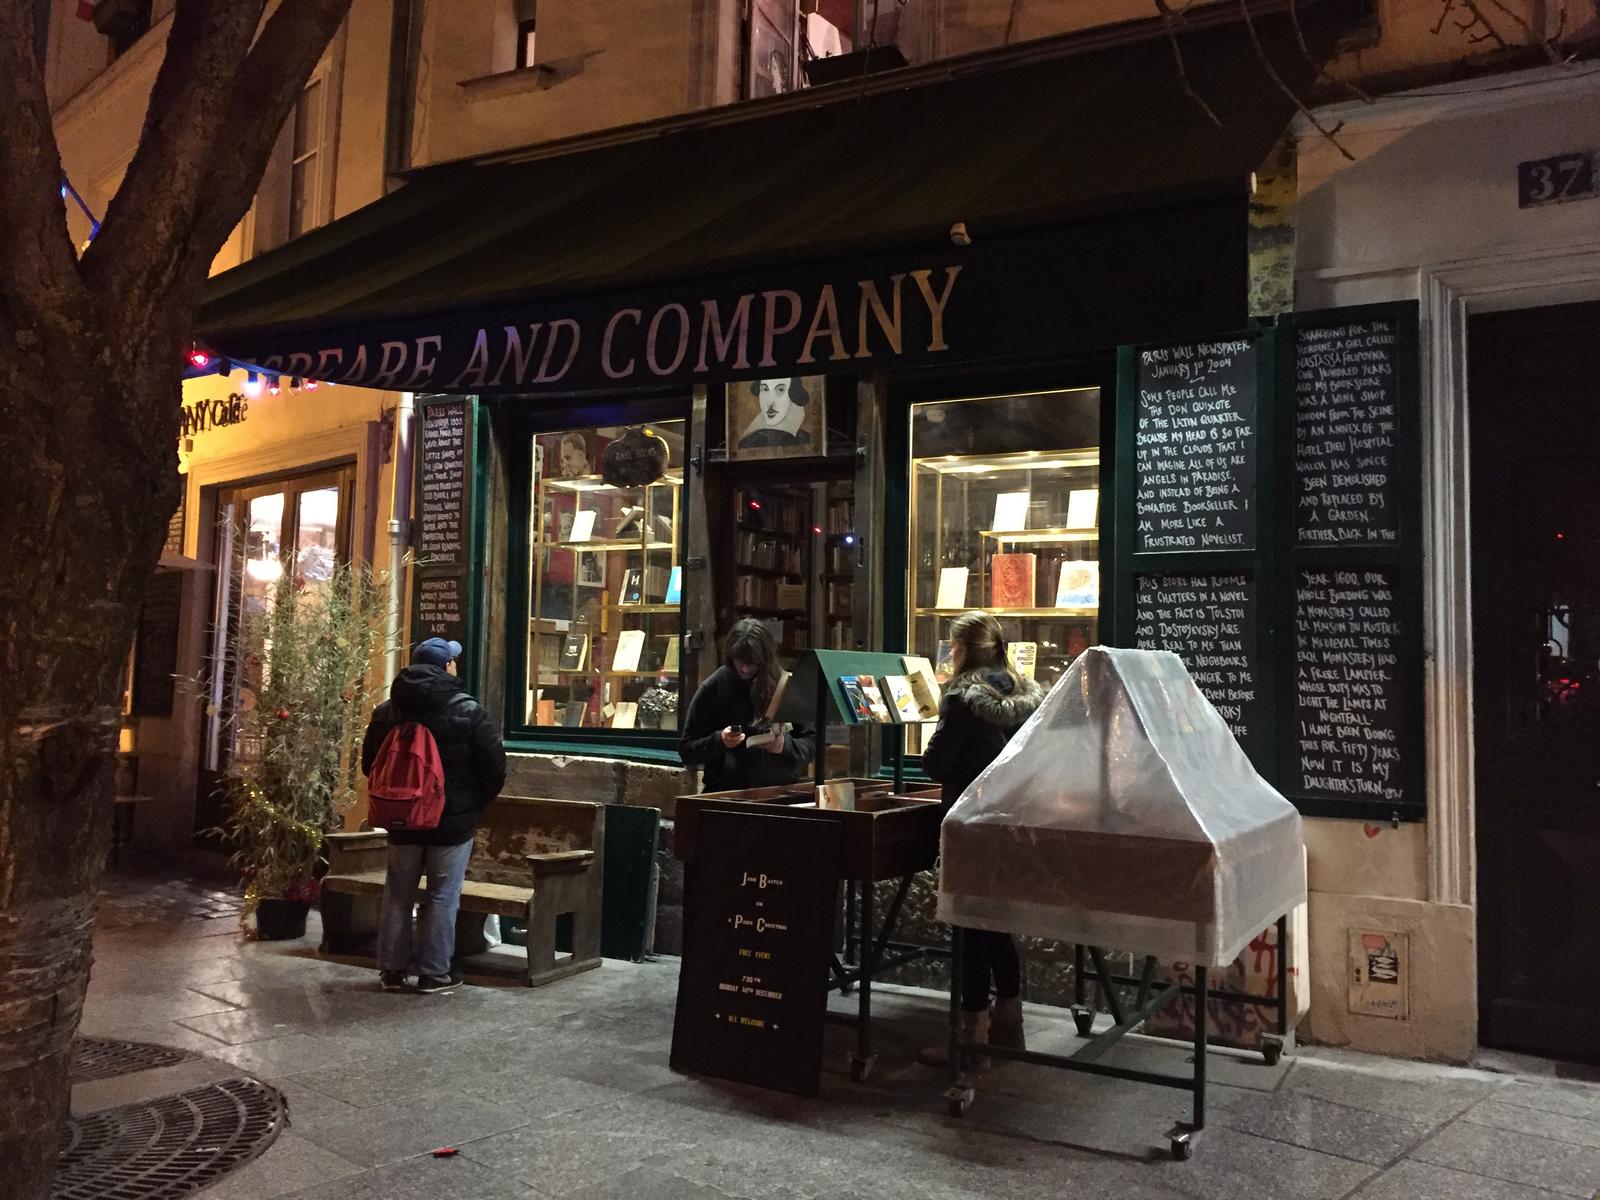 莎士比亚书店位于塞纳河左岸，这里也是巴黎文艺气息浓重的地方。最早知道莎